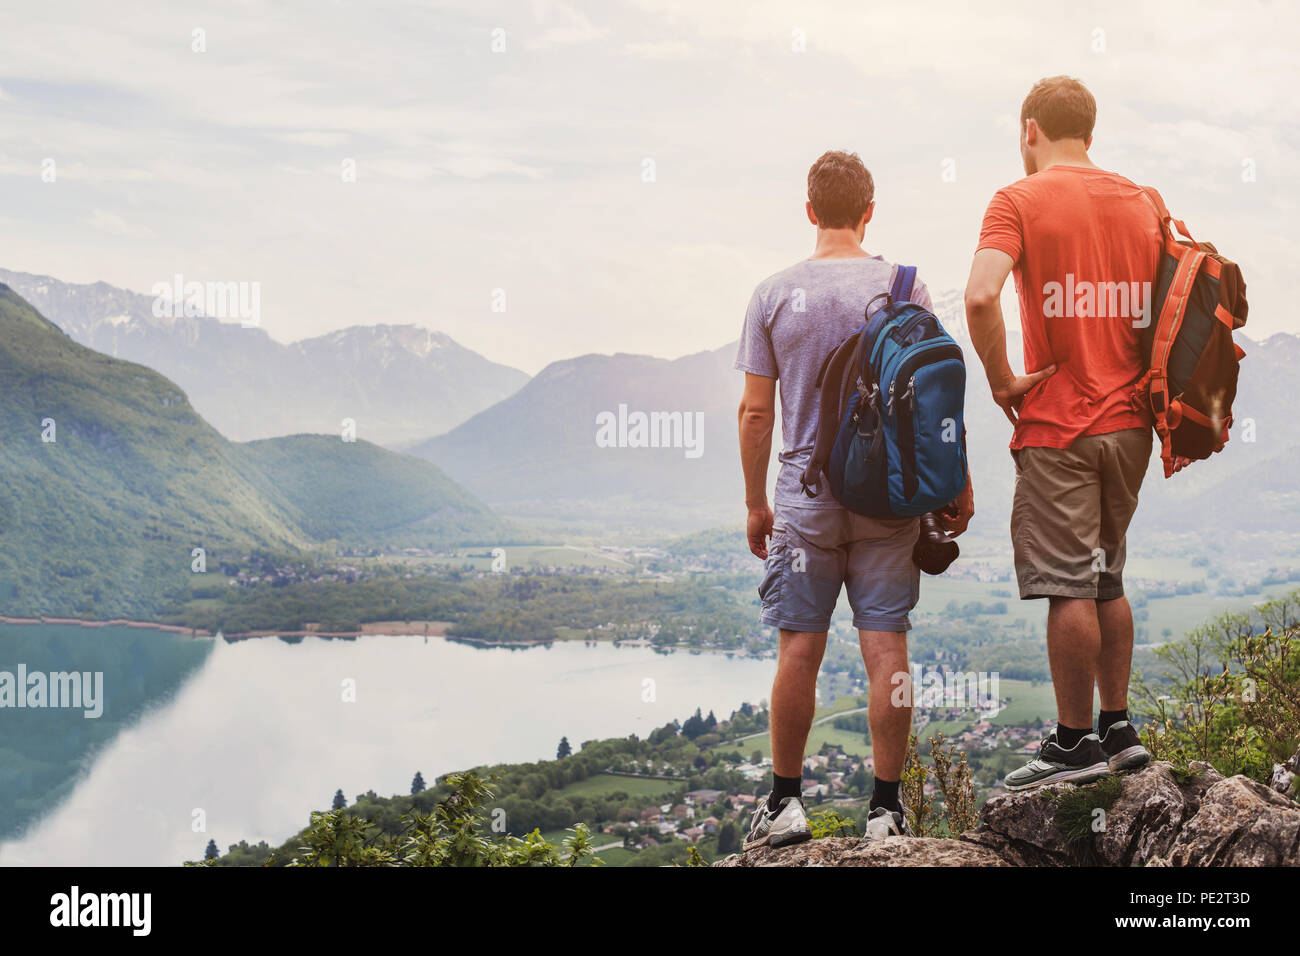 Les amis de la randonnée en Europe, randonnée pédestre dans les Alpes à Annecy, France, l'activité d'été en plein air avec sac à dos, deux personnes backpackers debout sur une montagne Banque D'Images